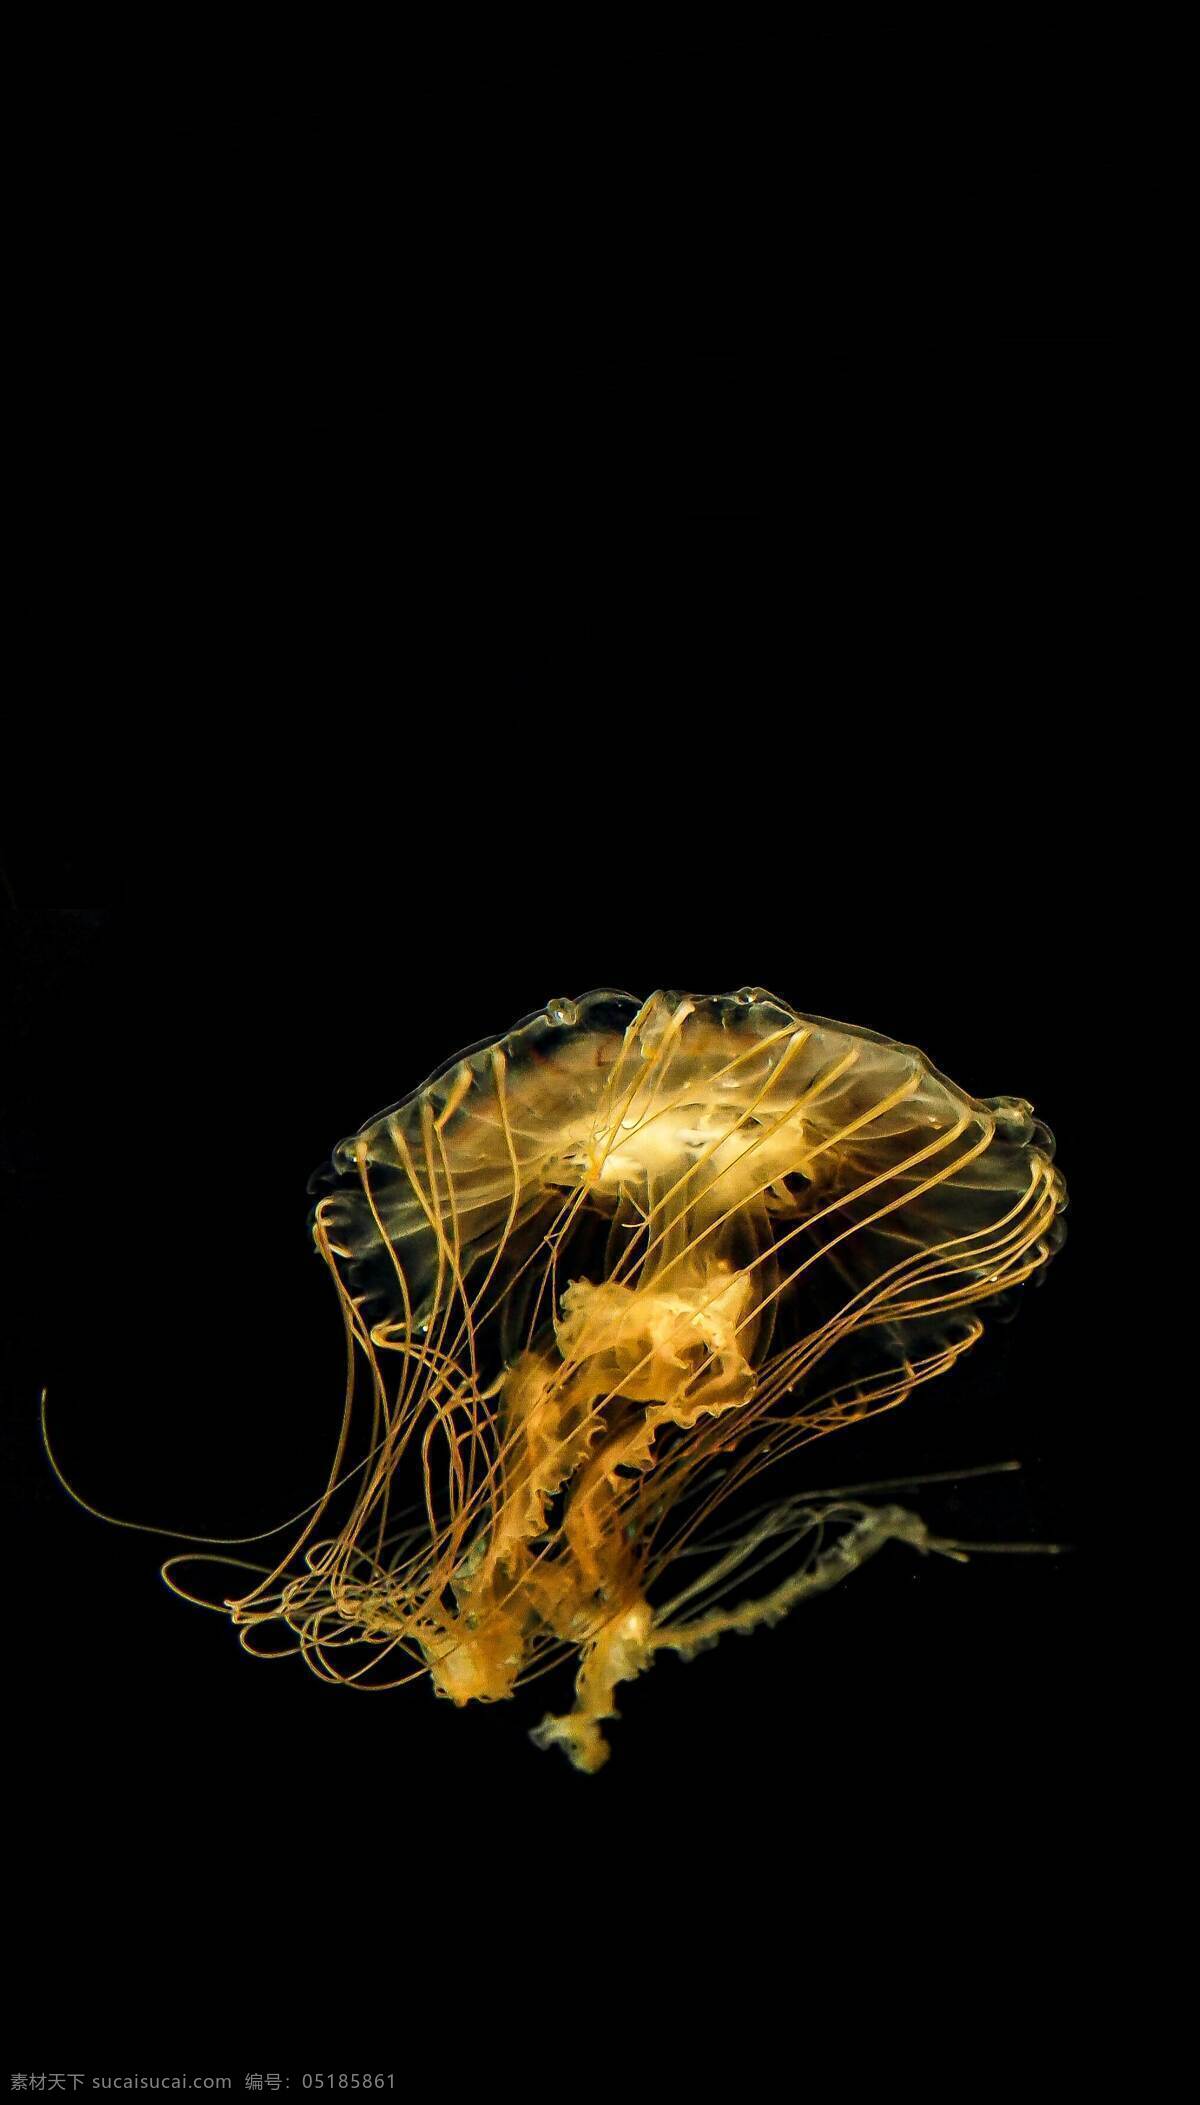 水母图片 美丽 海洋 生物 透明 水母 生物世界 海洋生物